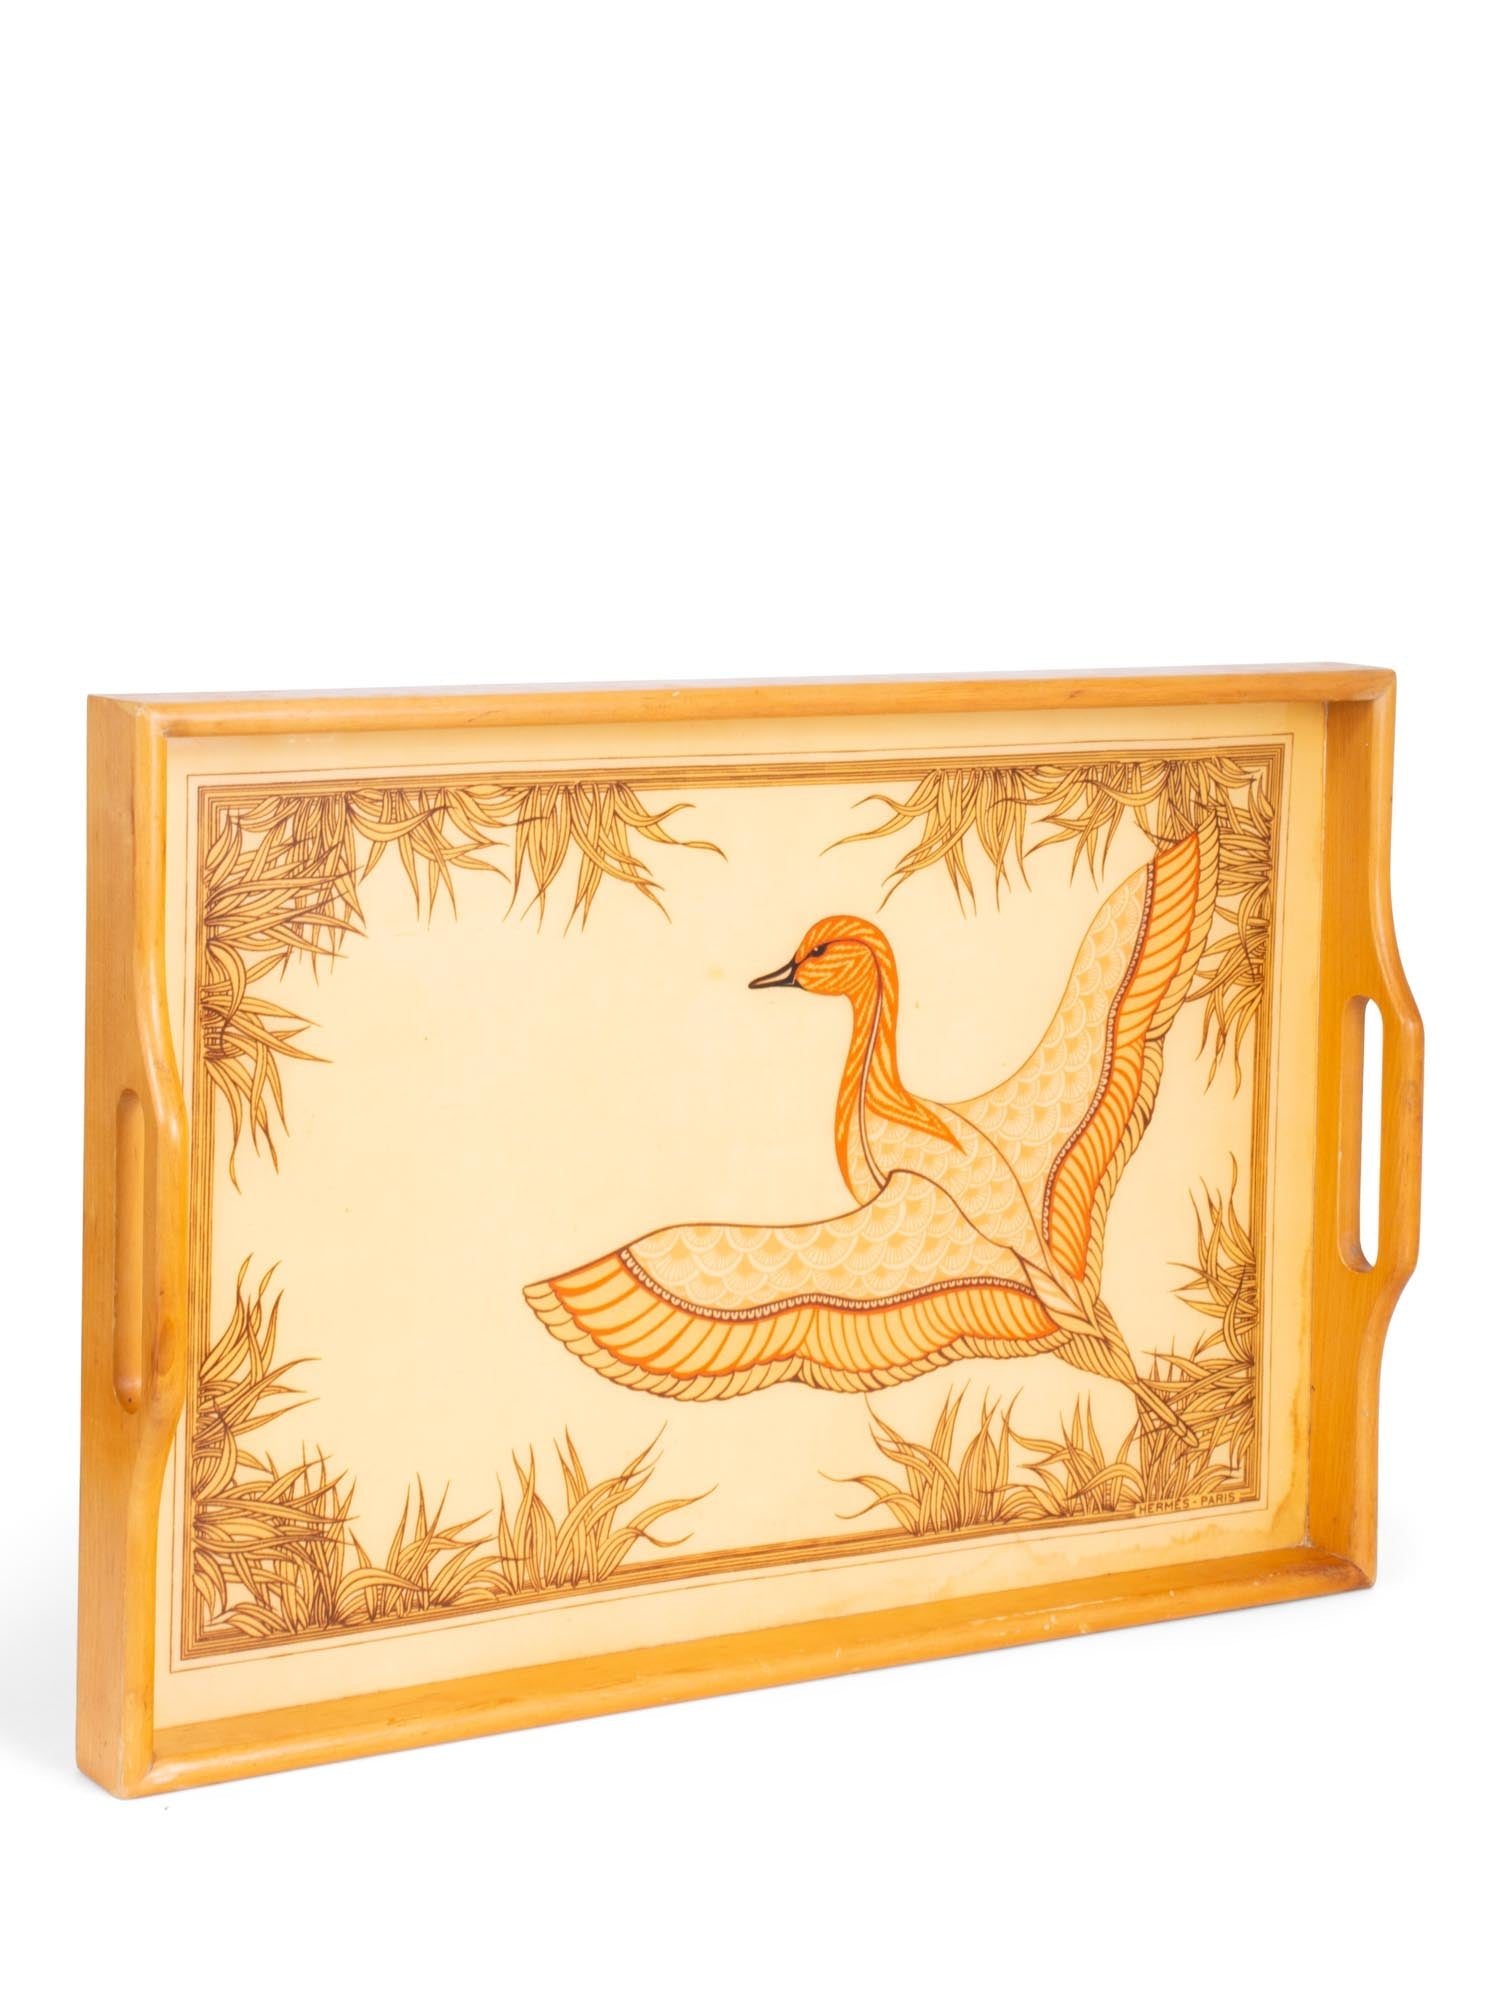 Hermes Vintage Wooden Duck Hermes Serving Tray Brown-designer resale